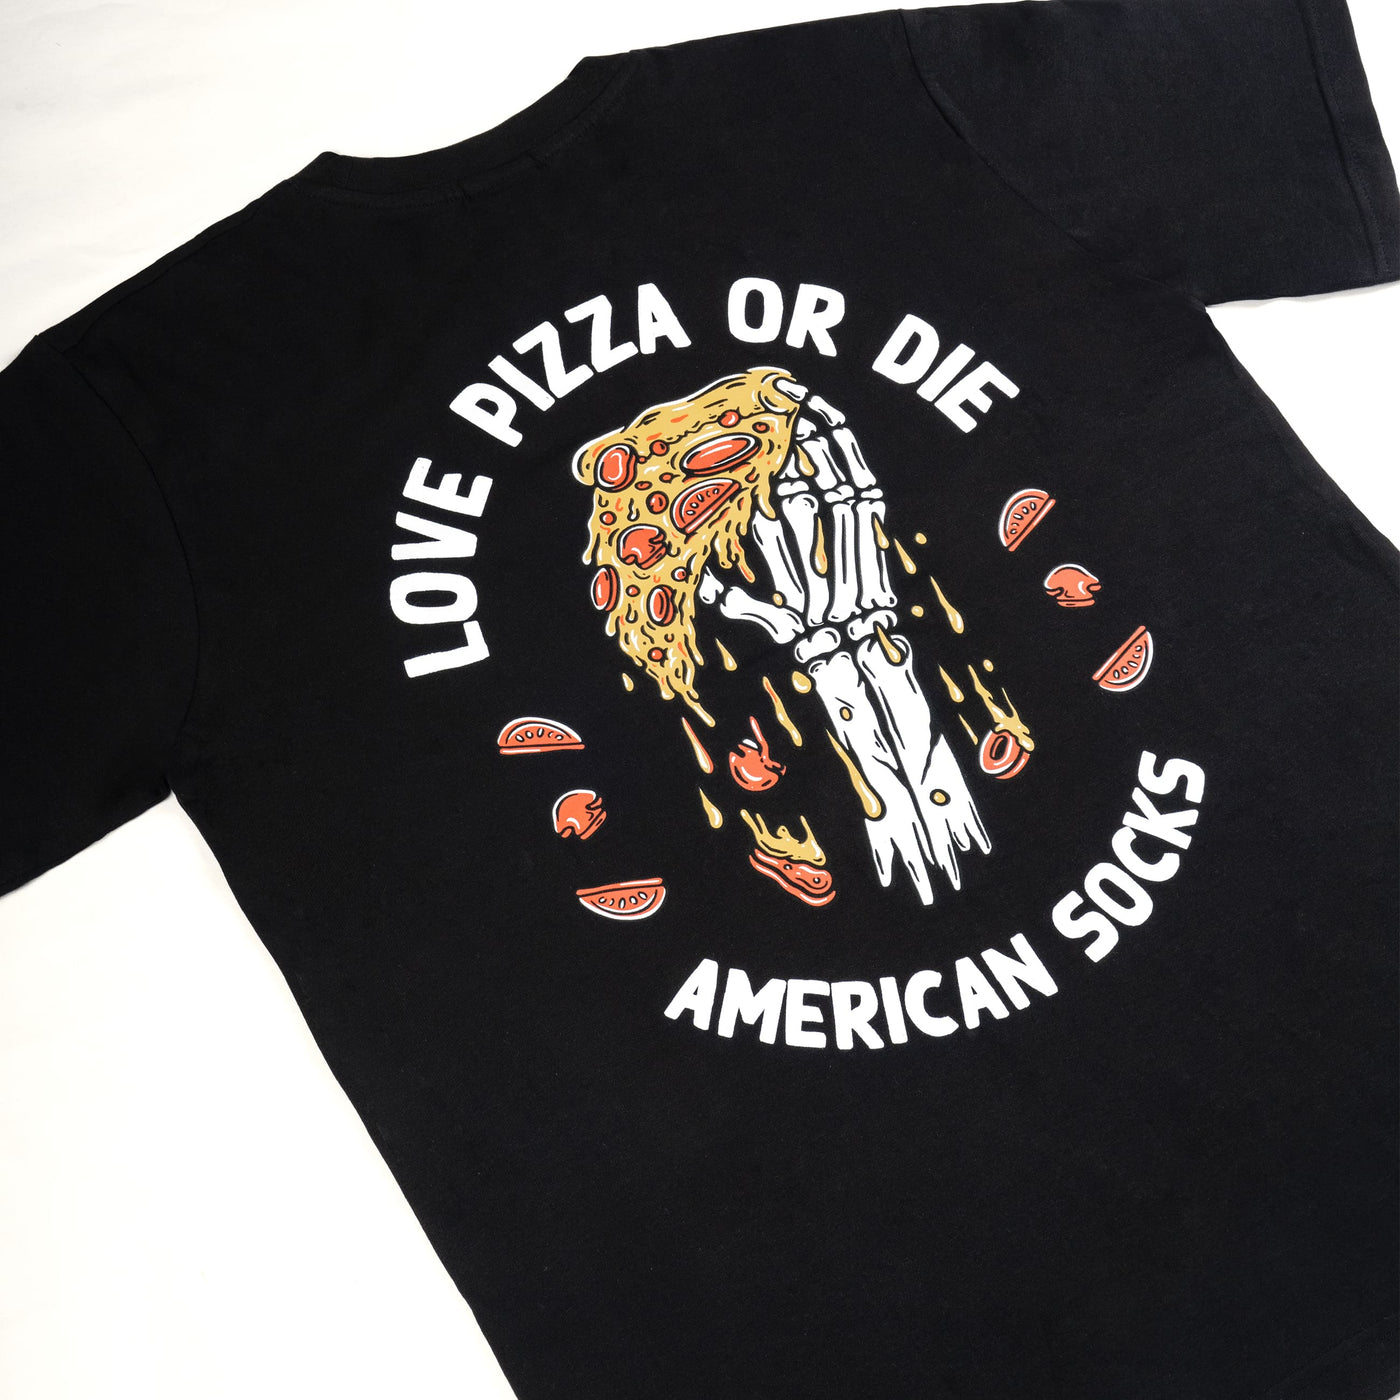 Love Pizza or Die - Camiseta